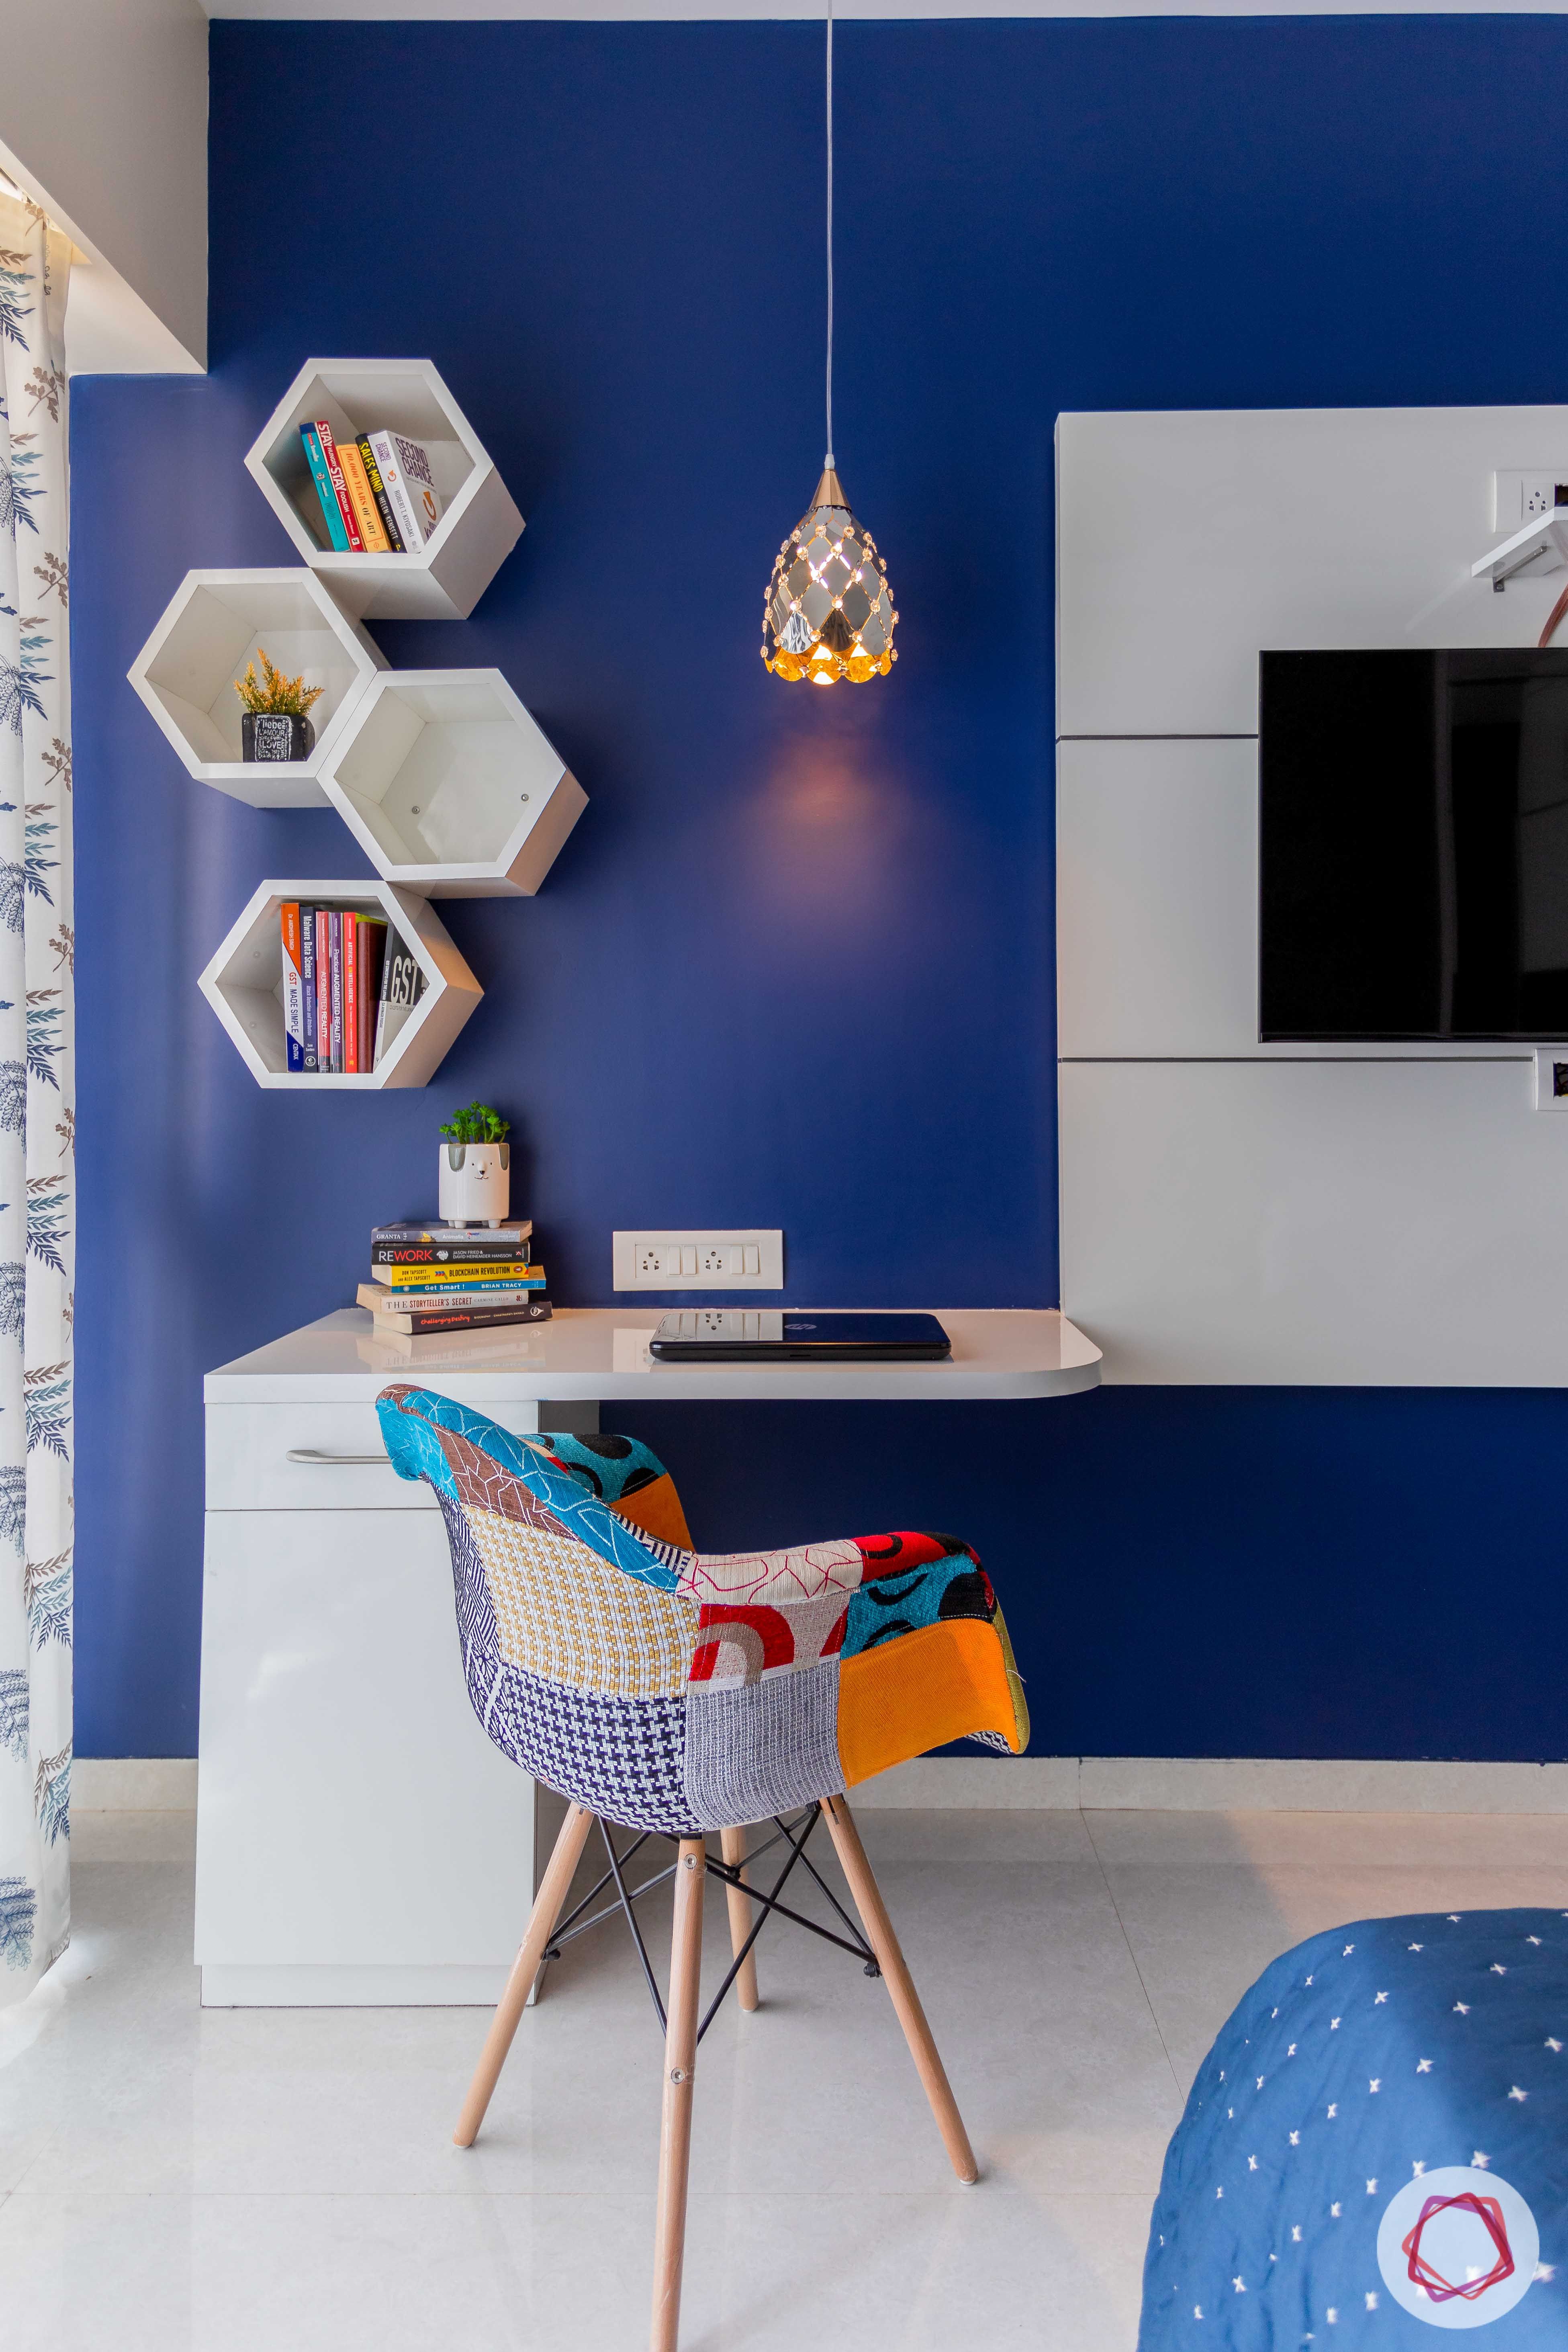 study room lighting-pendant light-blue accent wall-white hexagonal shelves